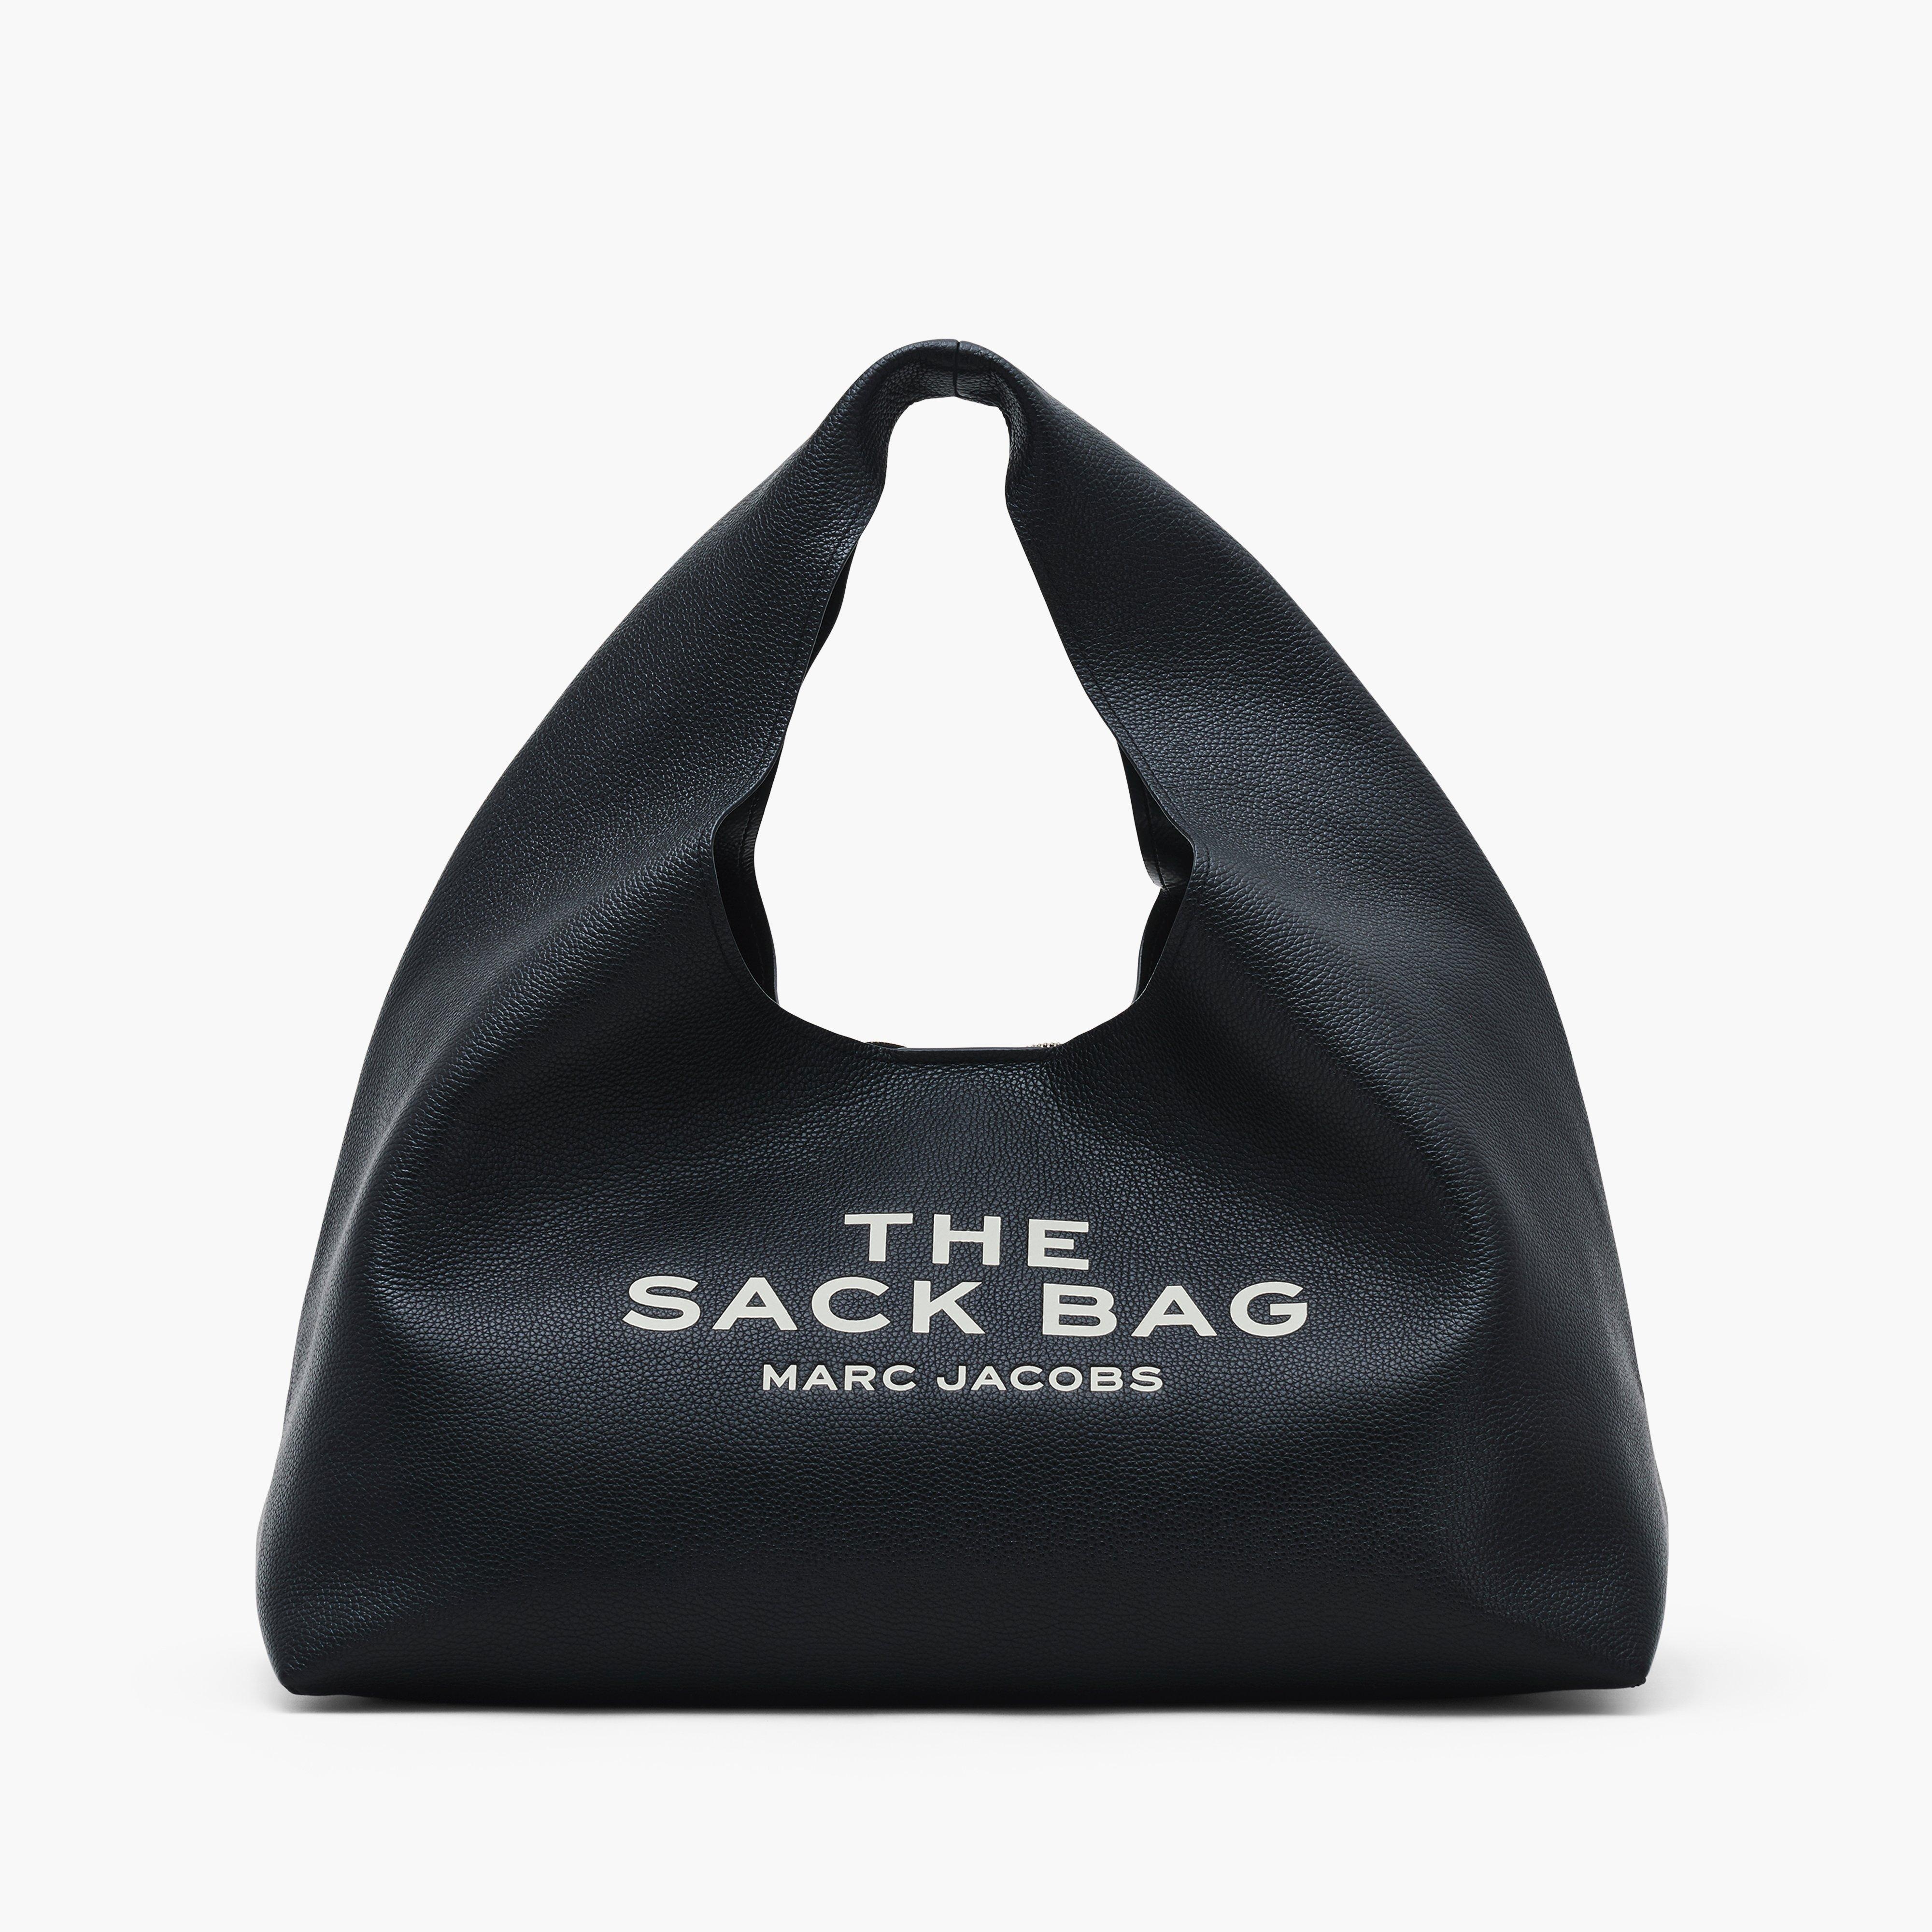 THE XL SACK BAG - 1